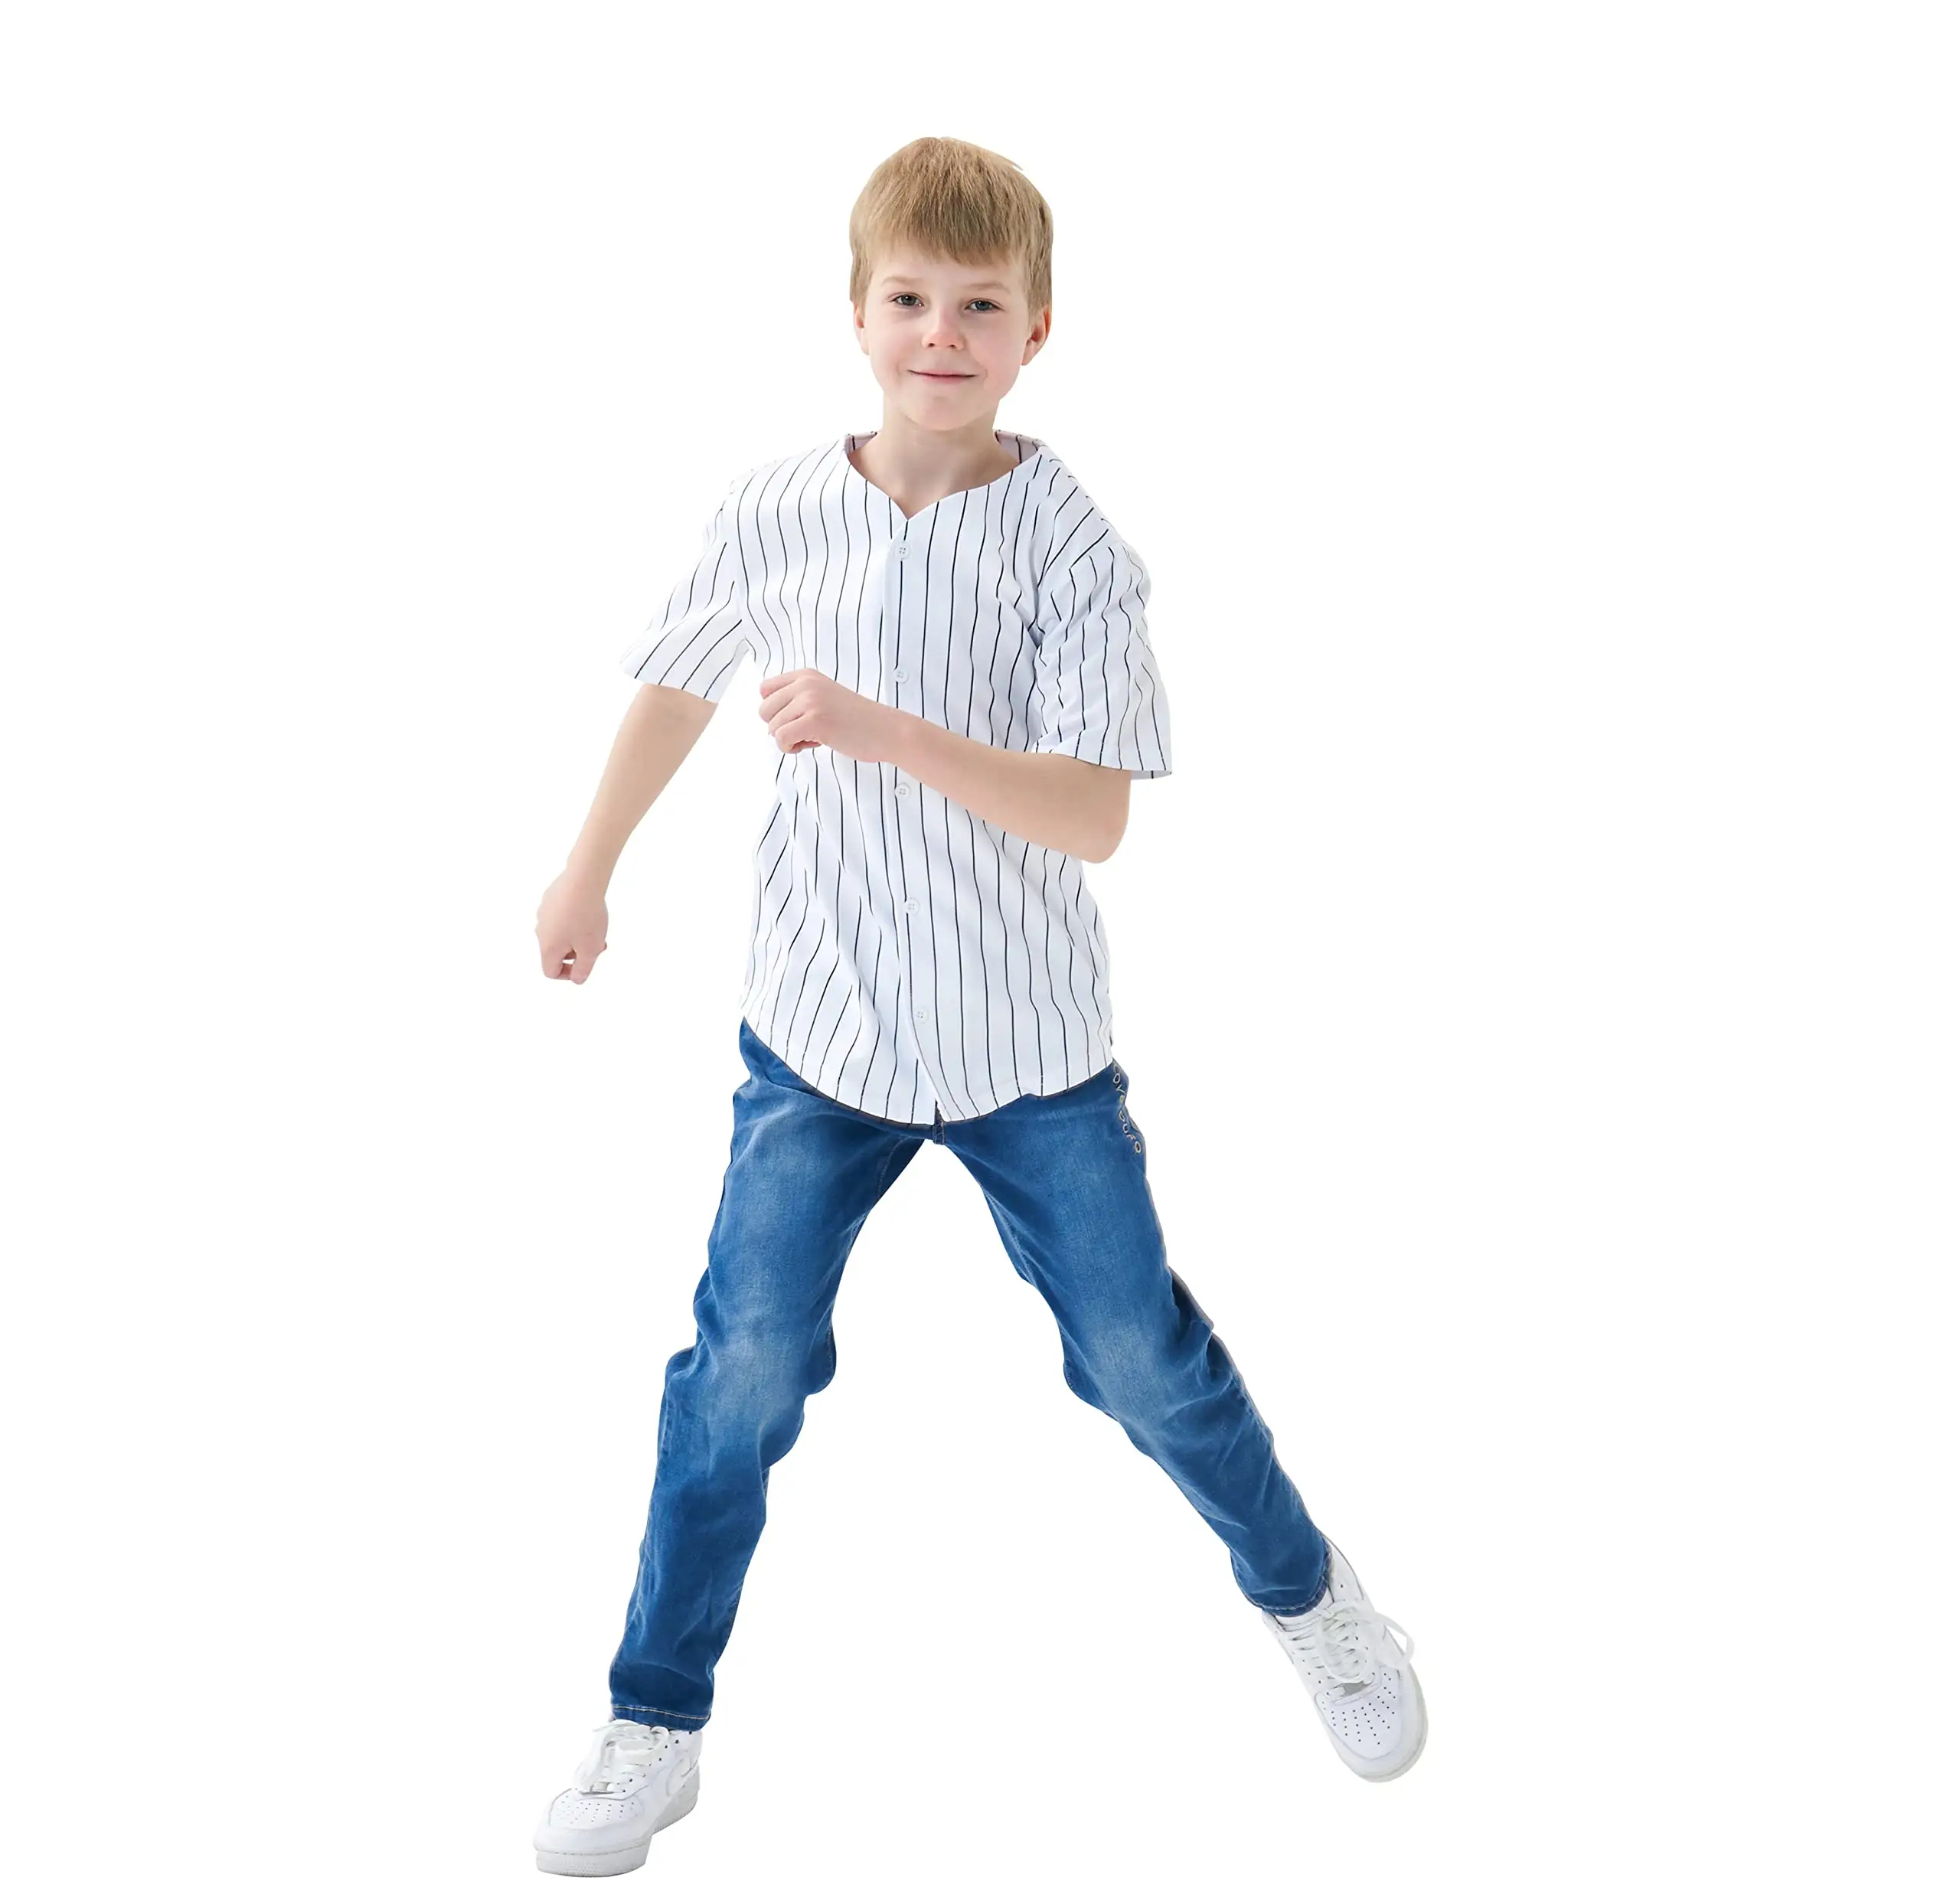 Jersey bisbol anak, kemeja kancing padat, seragam olahraga untuk anak laki-laki Gril Softball